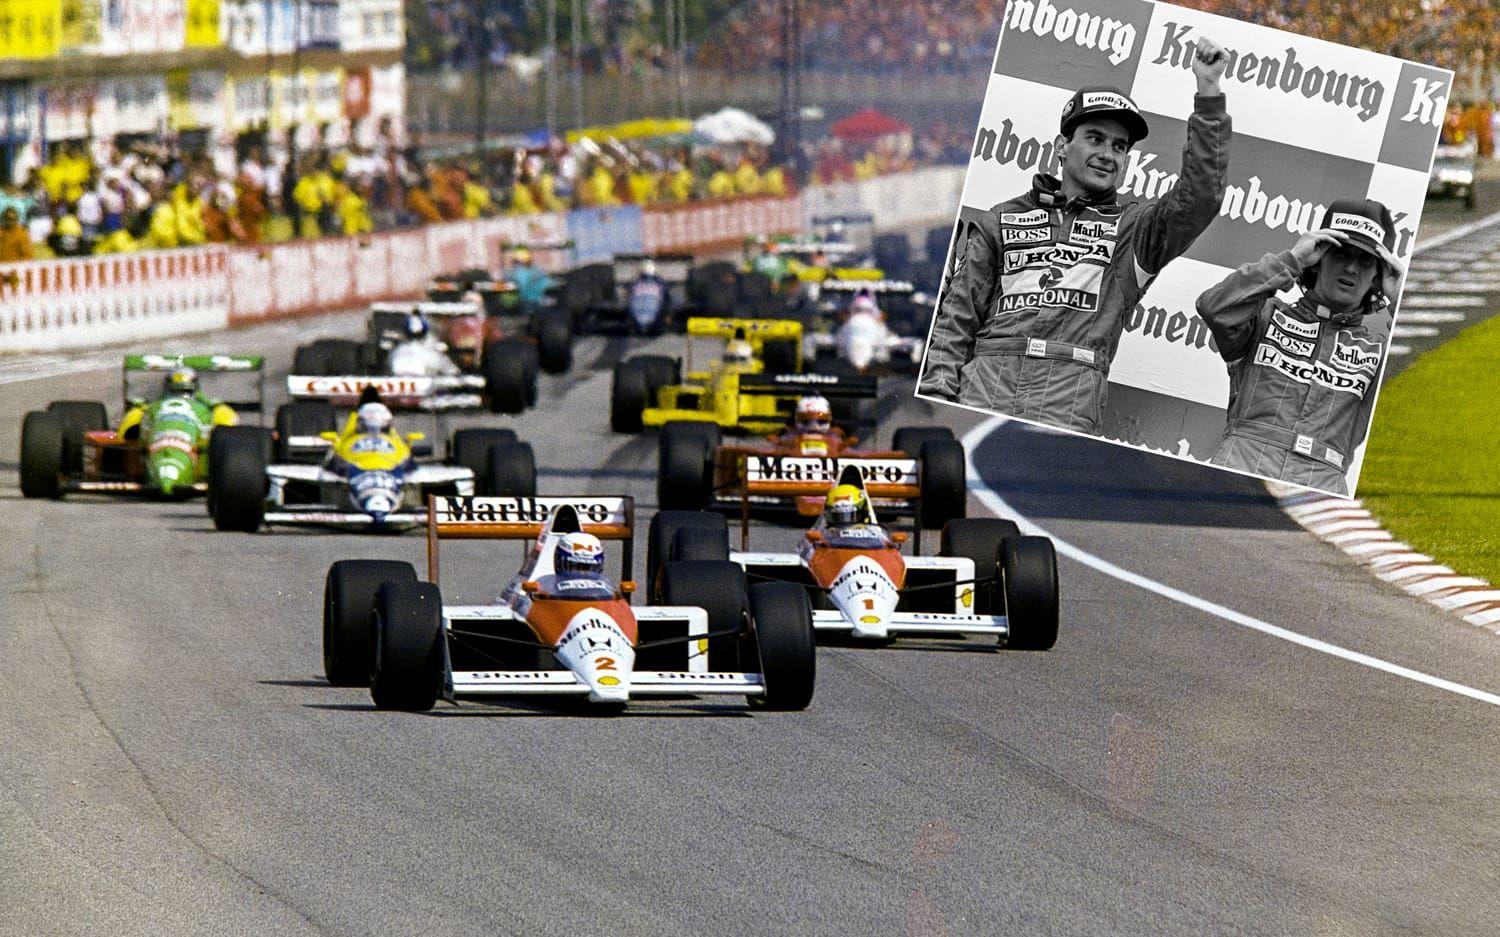 2. Ayrton Senna och Alan Prost. F1-världens två största stjärnor i slutet av 1980-talet och början av 1990-talet, var lagkamrater i McLaren-stallet. Men rivaliteten var stor, och de två stjärnorna hatade varandra. Efter Sennas titel 1988 förvärrades situationen och den efterföljade säsongen kulminerade konflikten när lagkamraterna kolliderade på Suzuka-banan. Senna diskvalificerades och Prost vann titeln. Foto: Bildbyrån